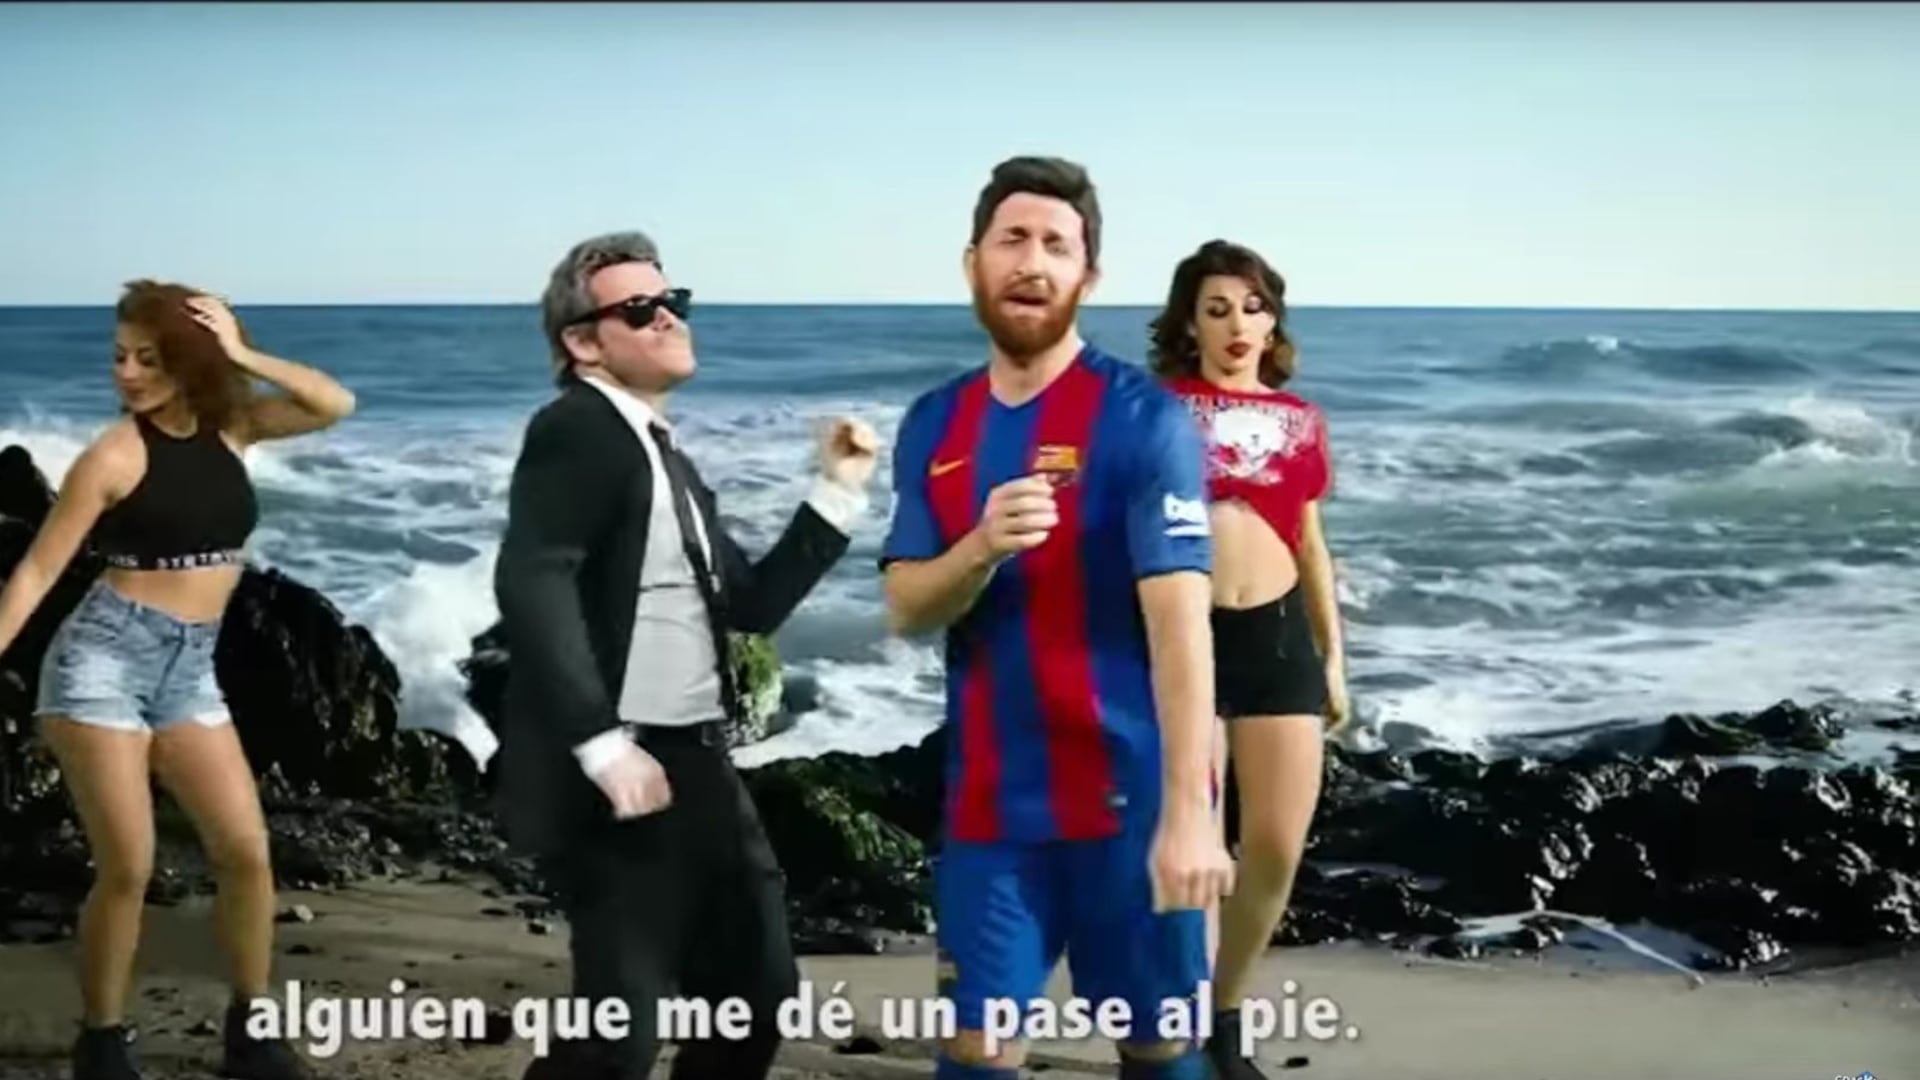 Burla de Messi al ritmo de Despacito